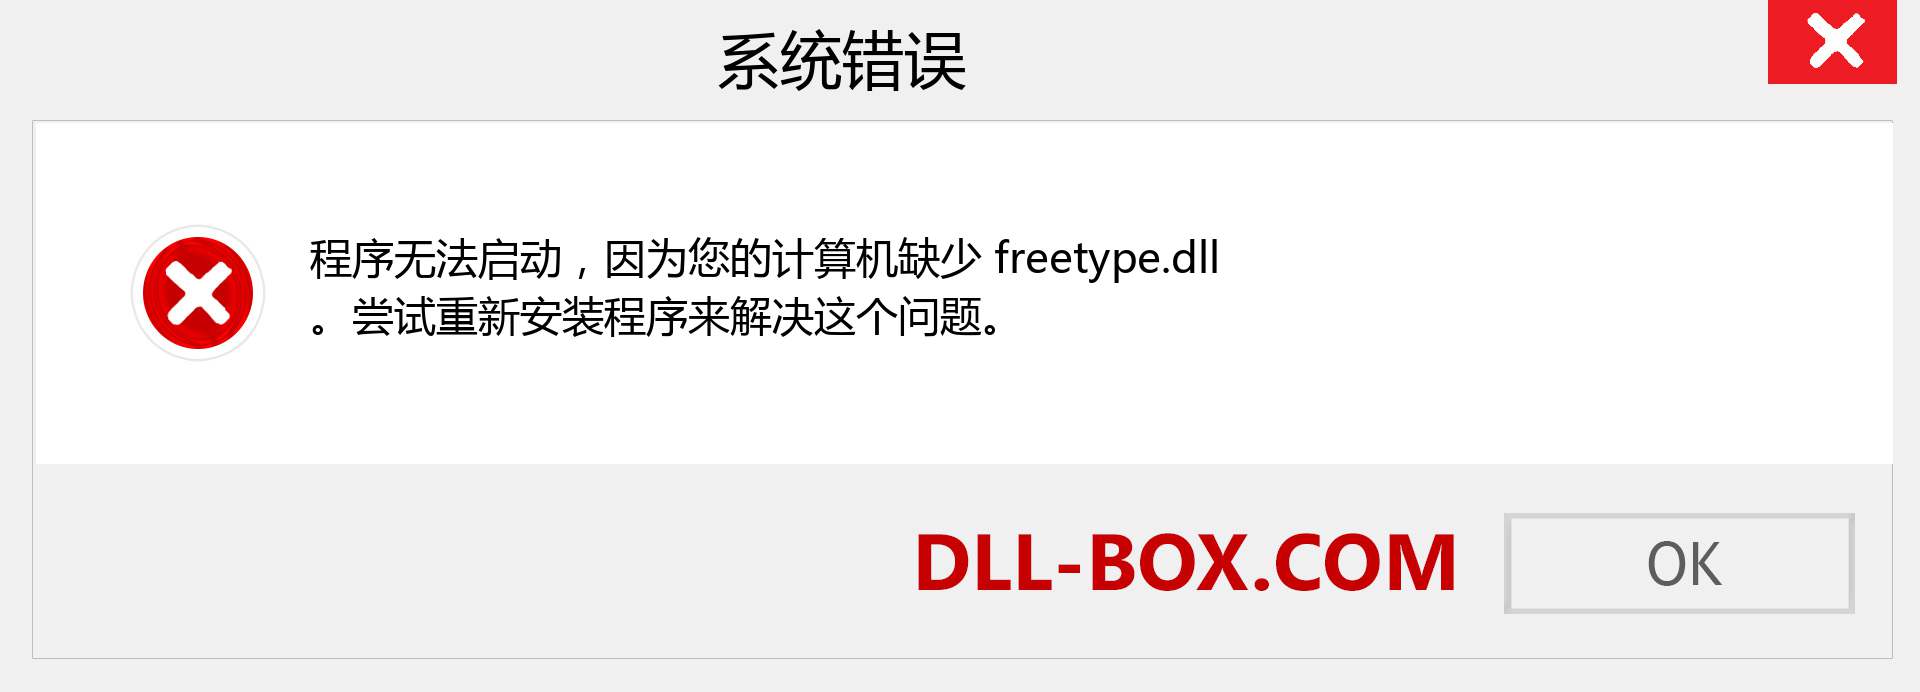 freetype.dll 文件丢失？。 适用于 Windows 7、8、10 的下载 - 修复 Windows、照片、图像上的 freetype dll 丢失错误